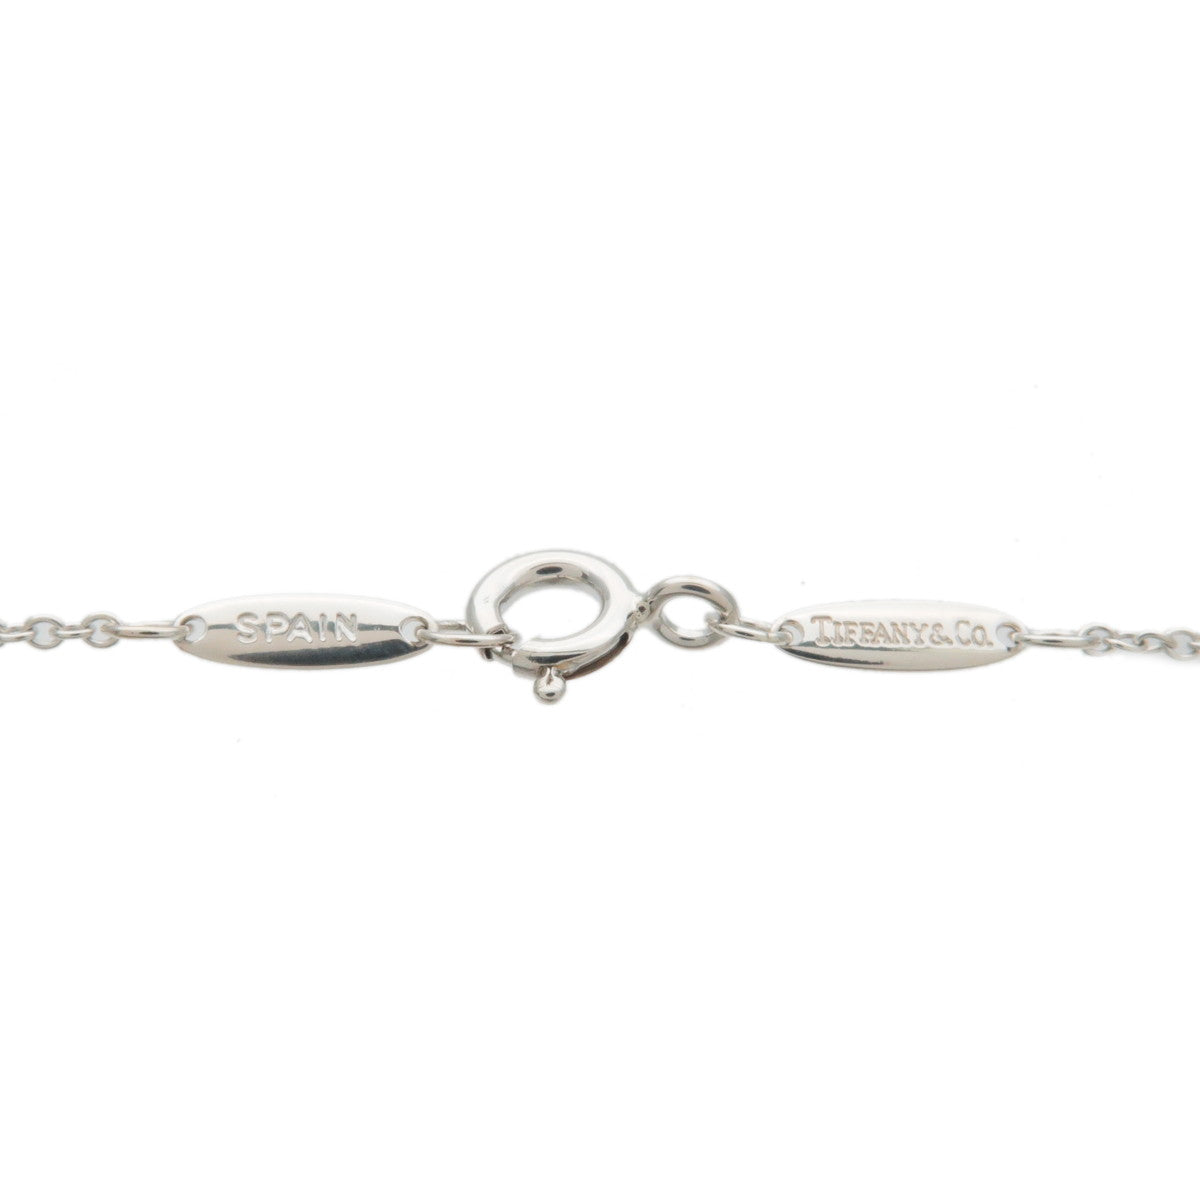 Tiffany&Co. Elsa Peretti Star of David Necklace 925 Silver